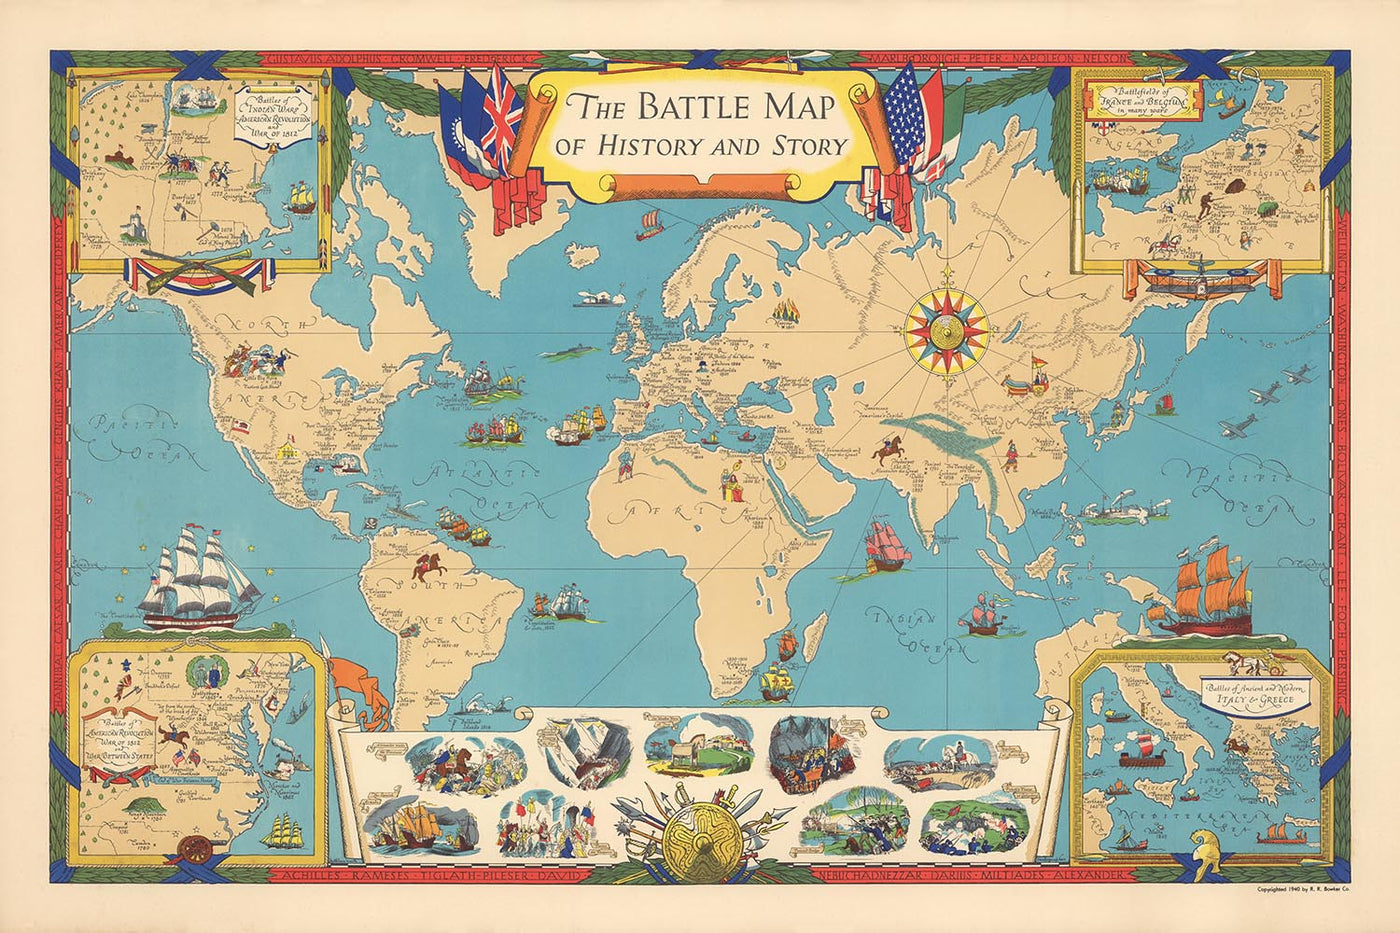 Mapa de historia e historia de las batallas del Viejo Mundo por Kathleen Voute en 1940: troyanos, Napoleón, la Armada española, Alejandro Magno, el Imperio Romano